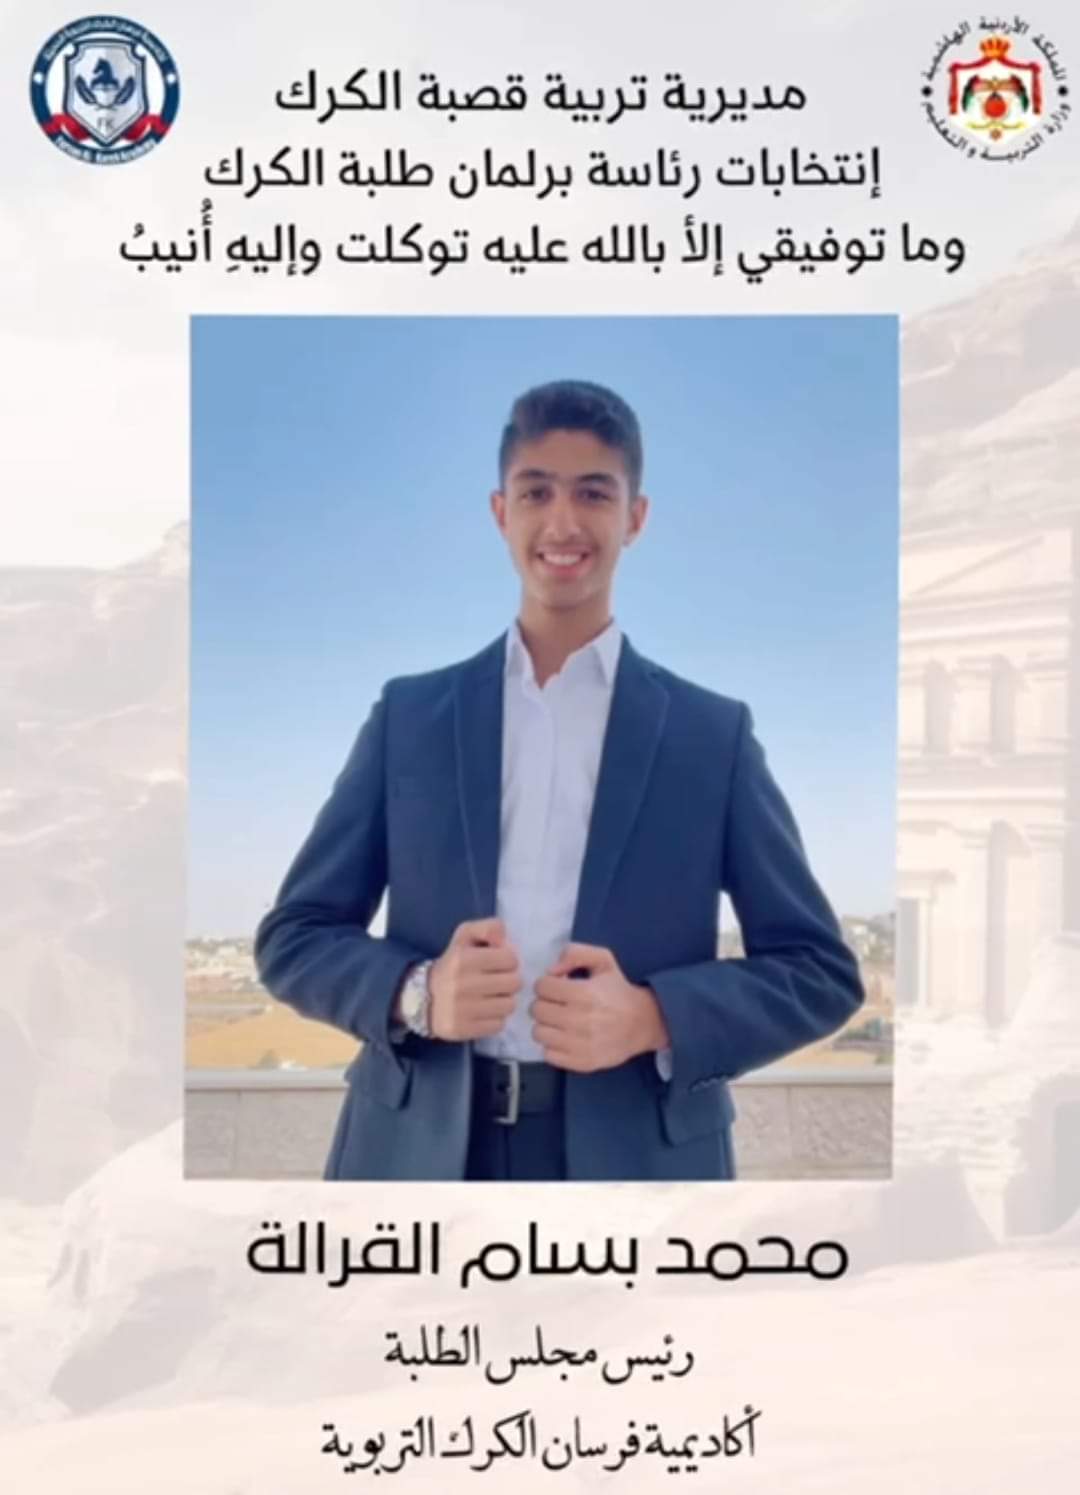 الطالب محمد بسام القرالة...مبارك العضوية 